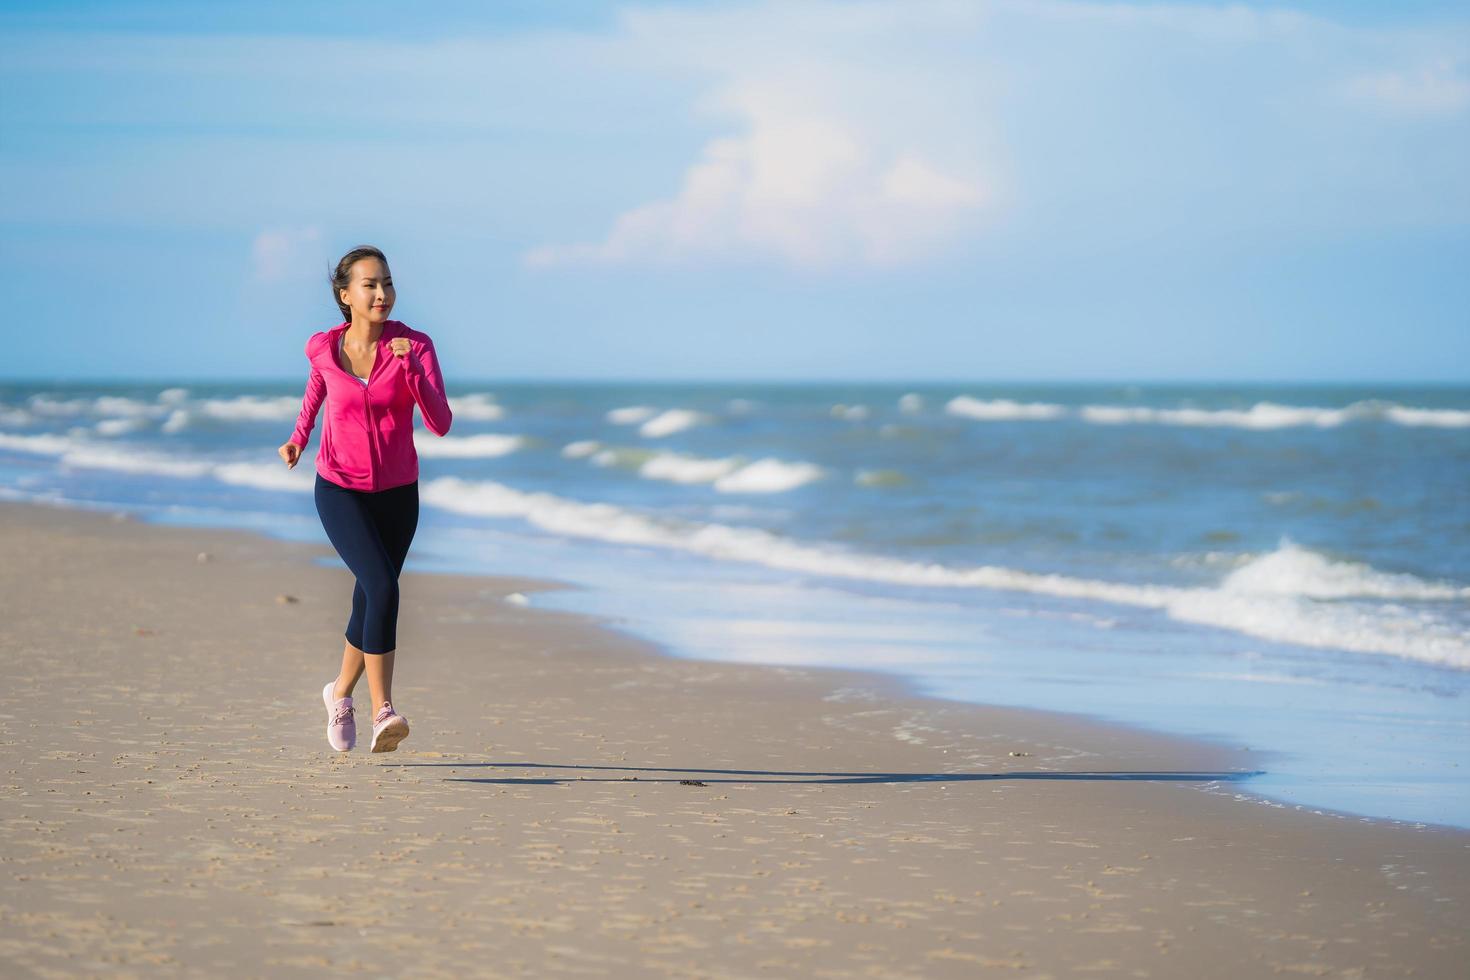 Portrait belle jeune femme asiatique courir et faire de l'exercice sur la nature tropicale en plein air plage mer océan photo